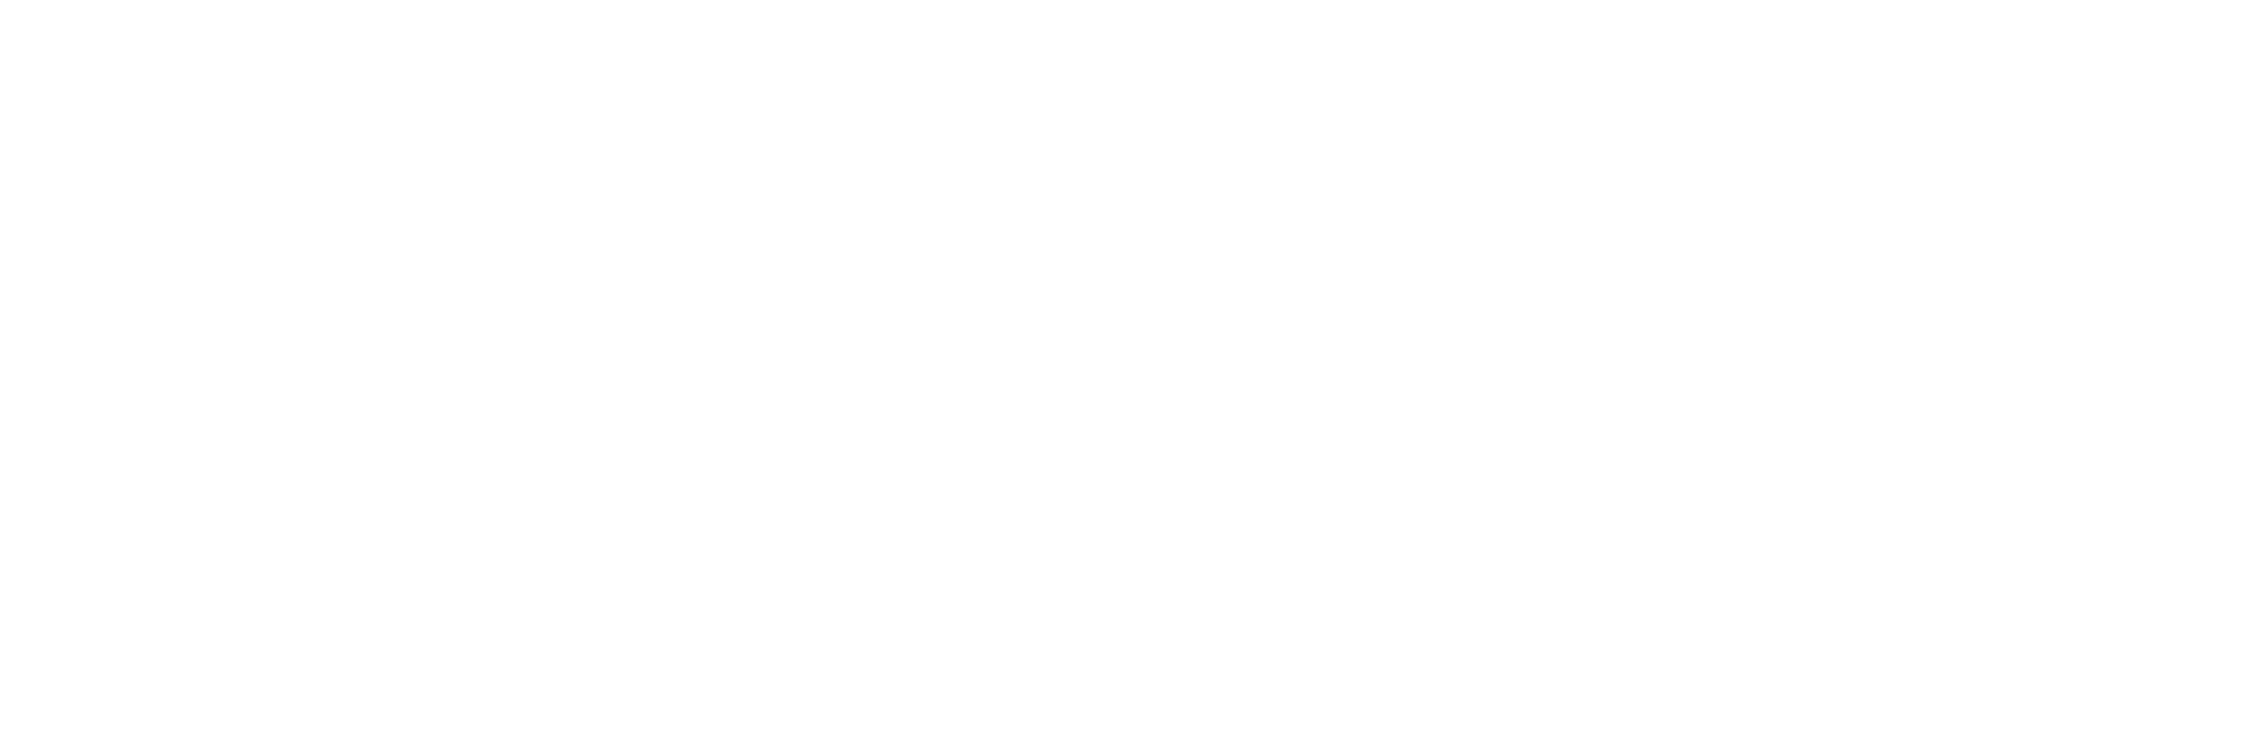 Yannick Avila Photography